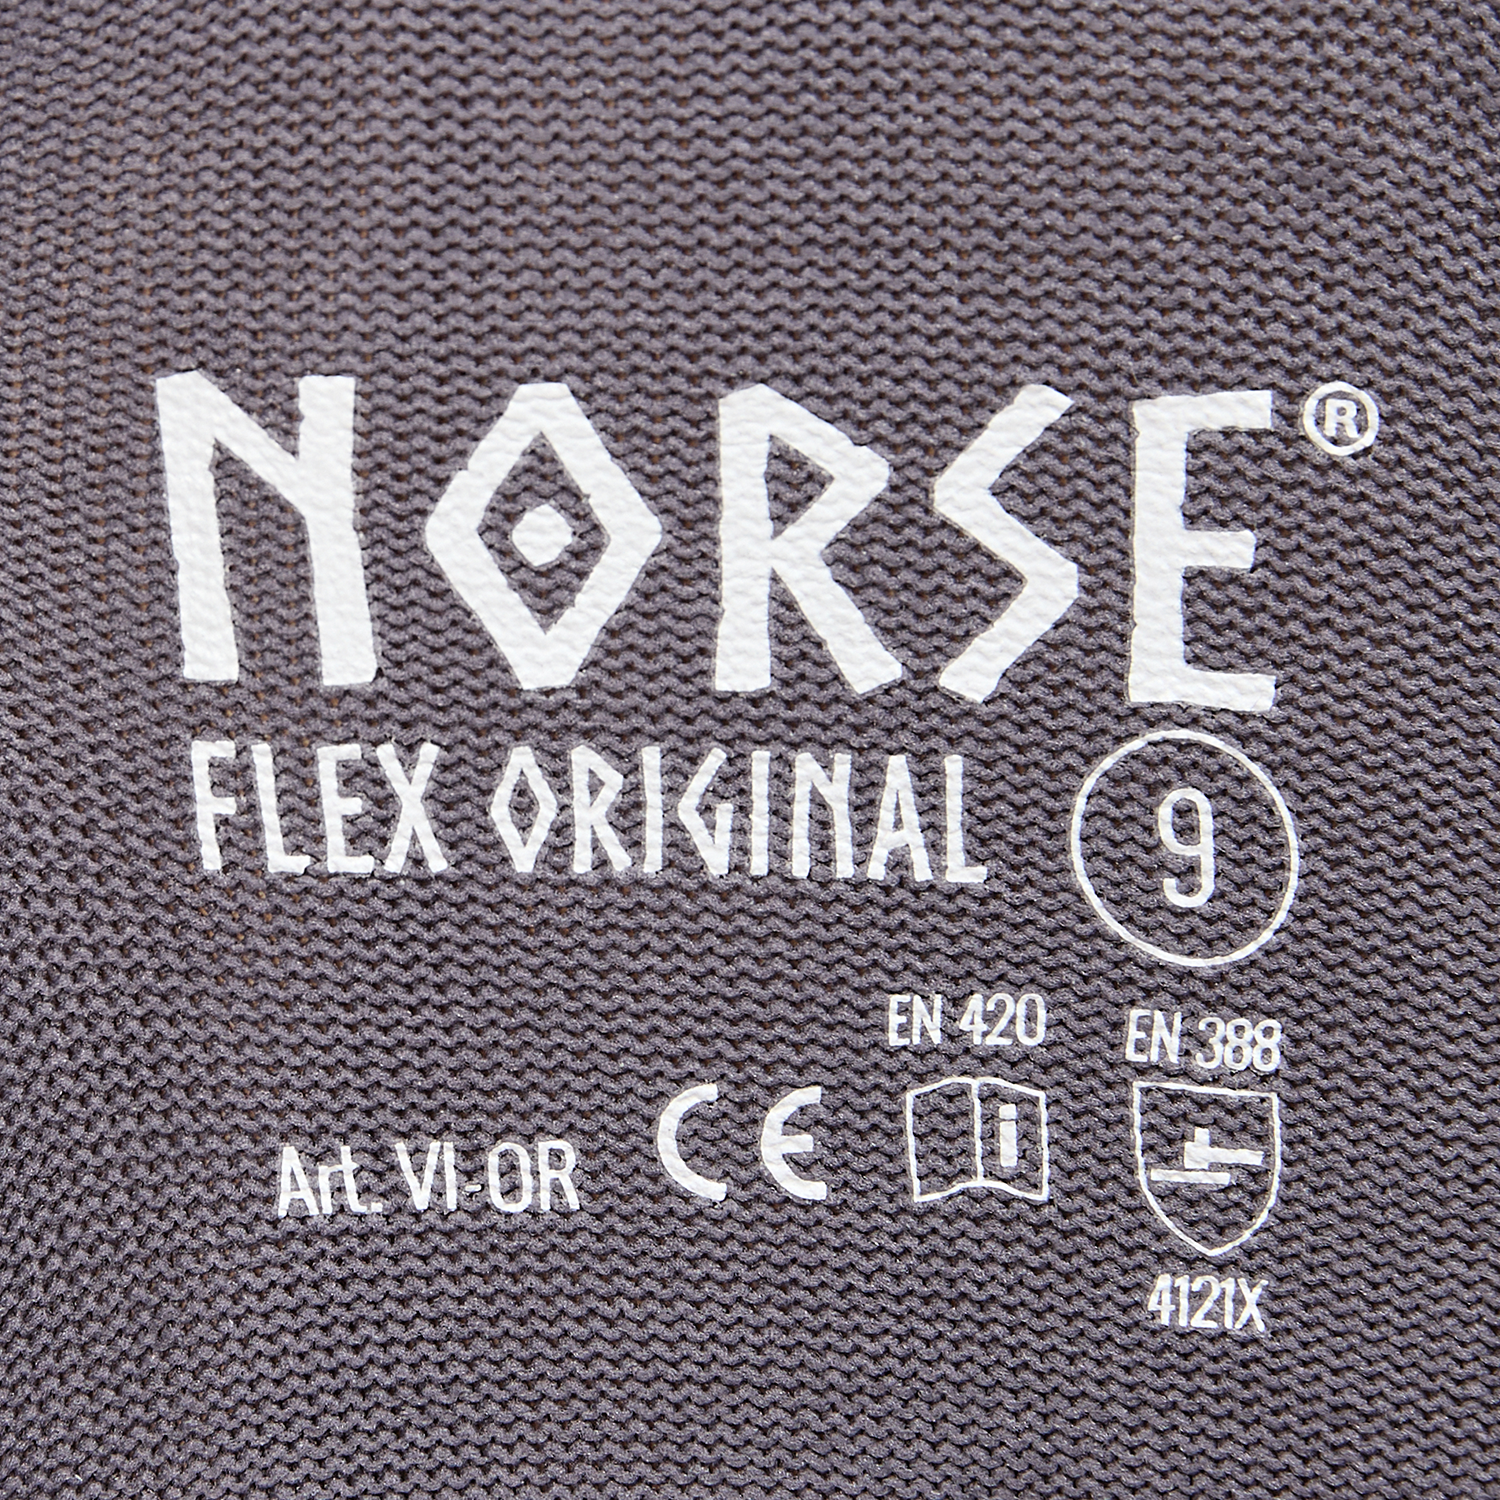 NORSE Flex Original montagehandschoenen maat 10